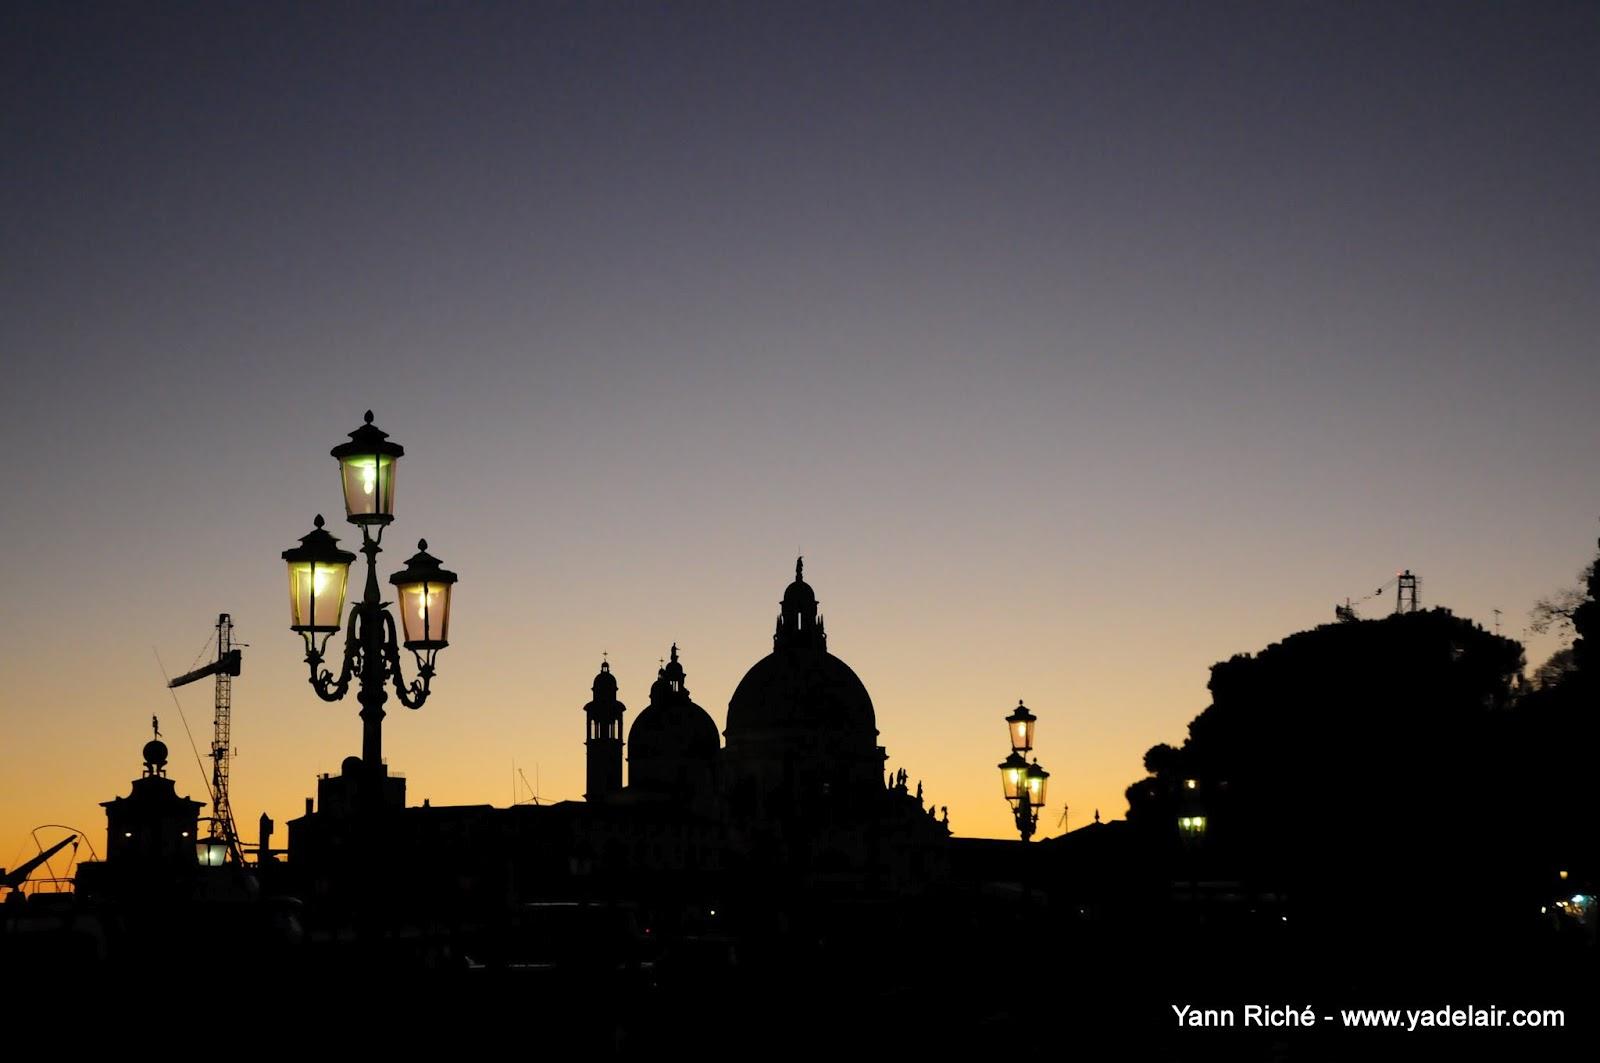 Venise : ombres et lumières